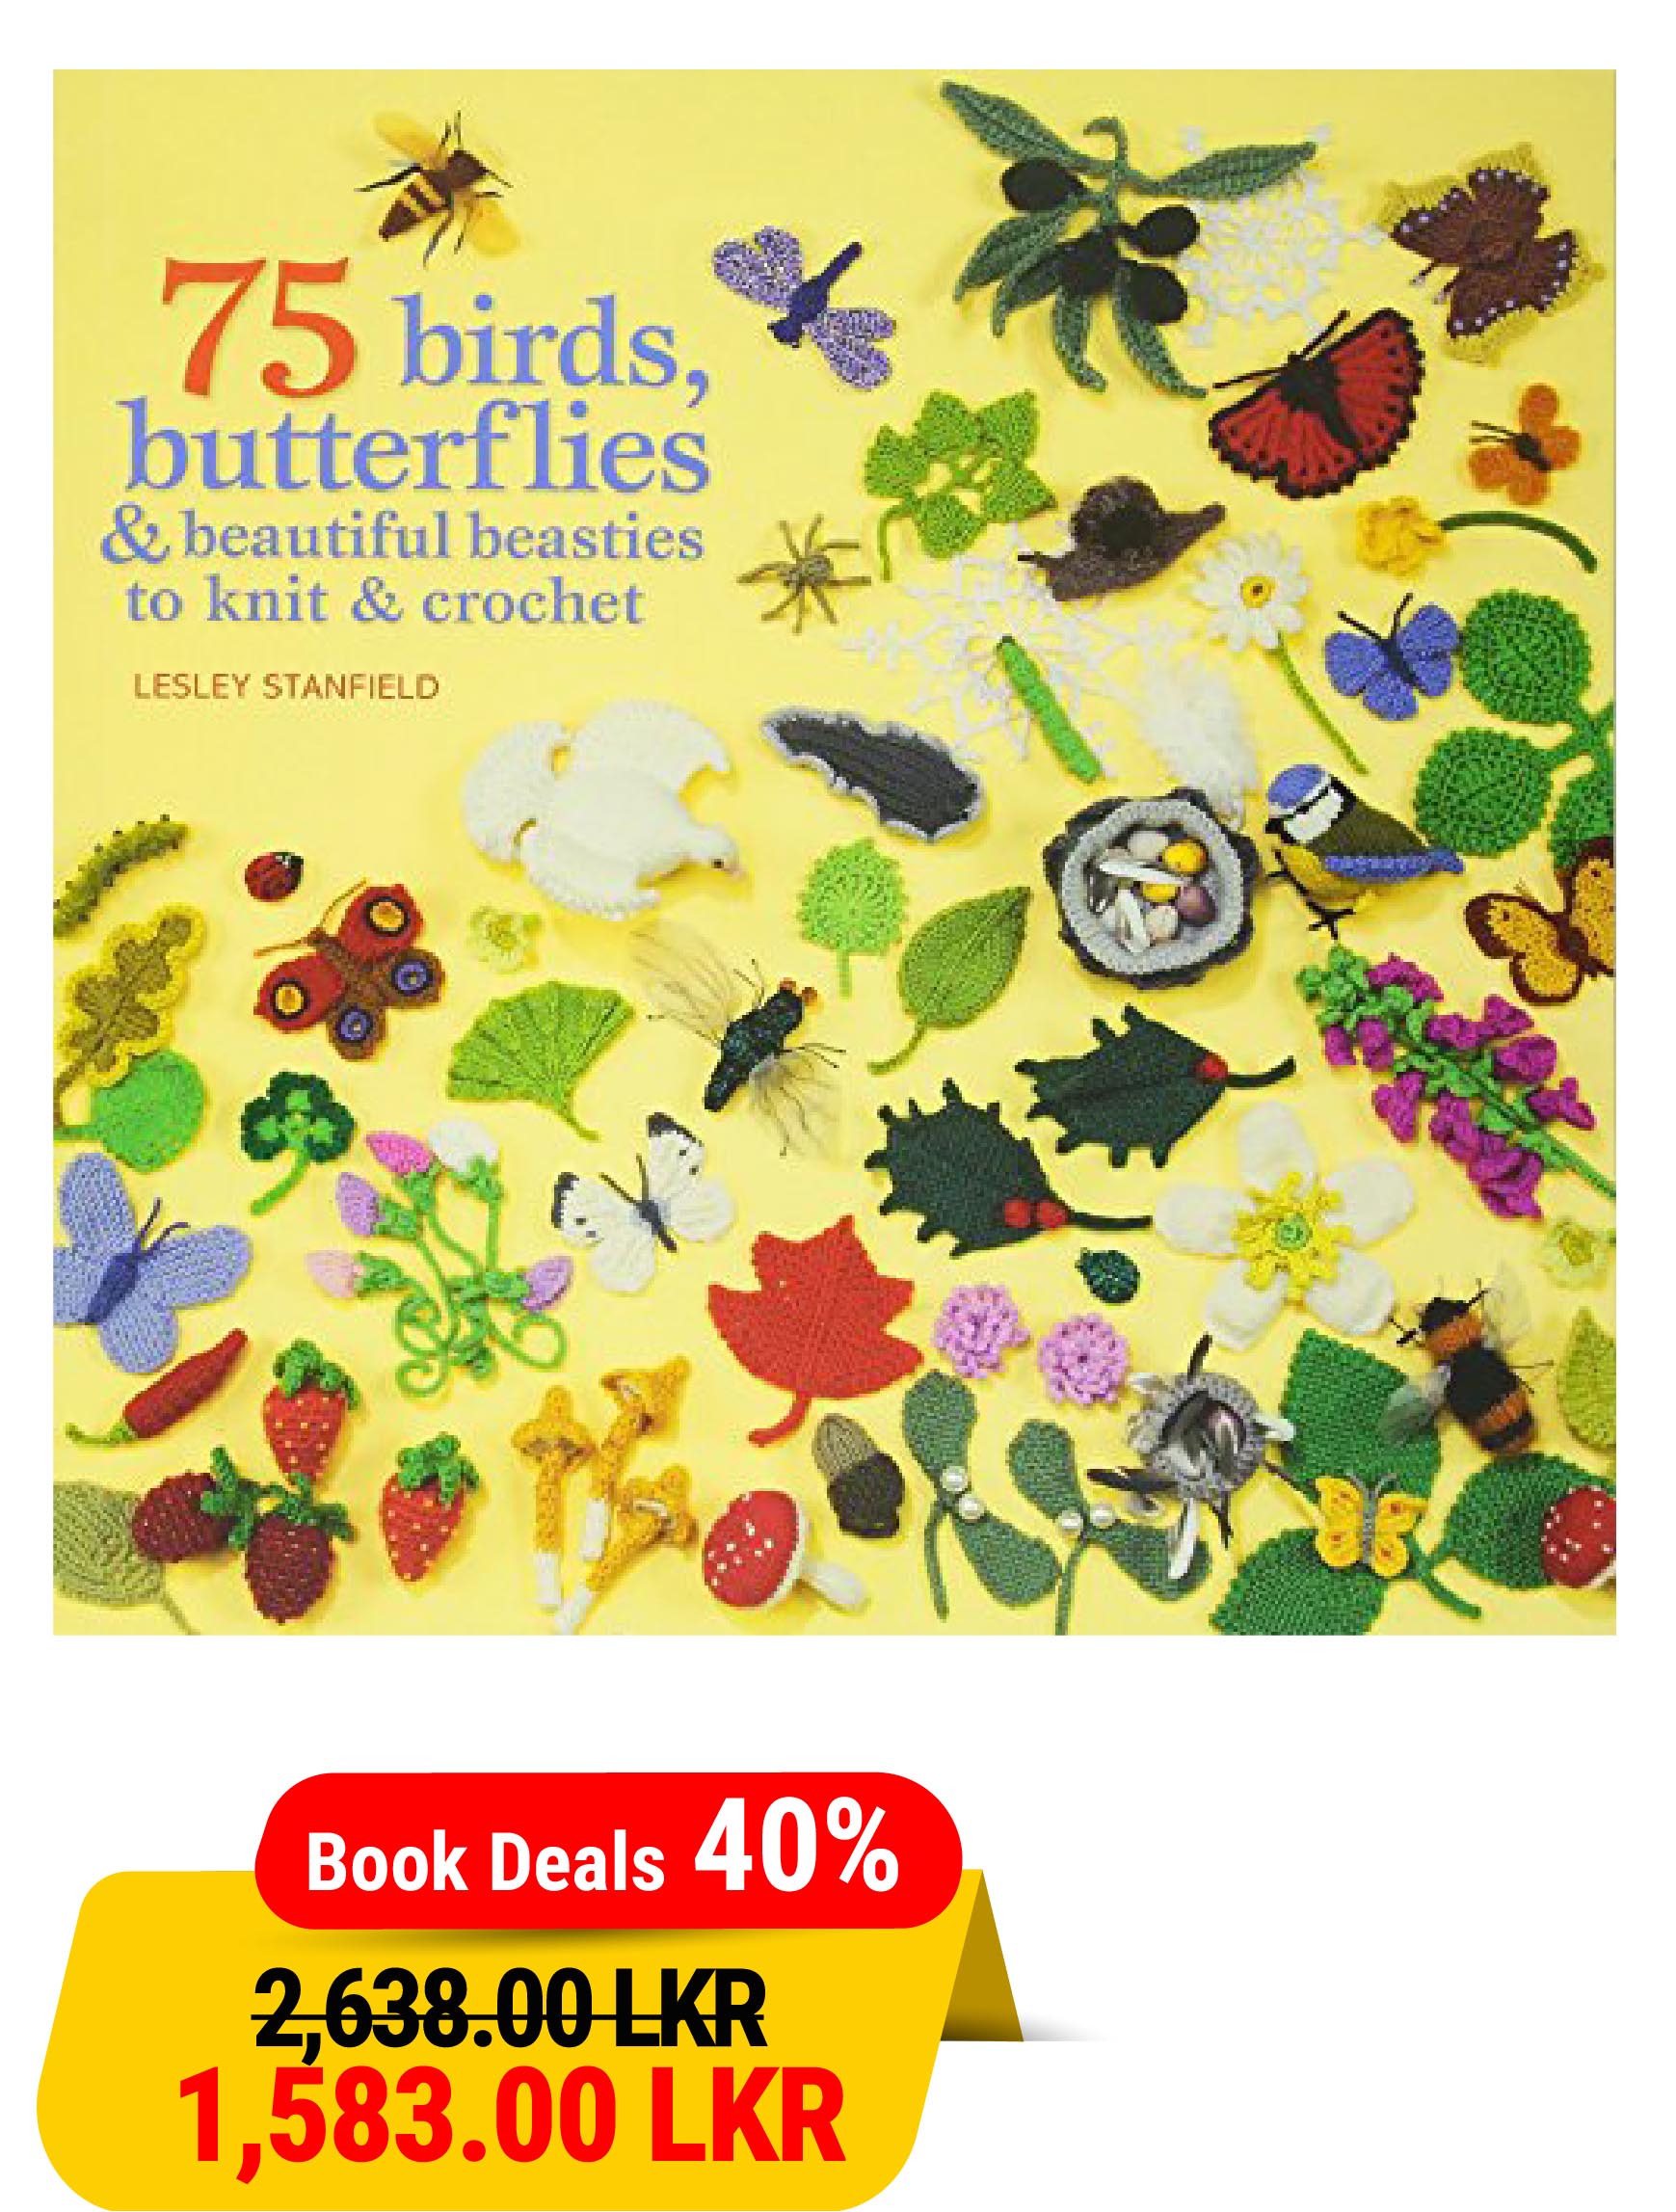 75 Birds and Butterflies to Knit & Crochet